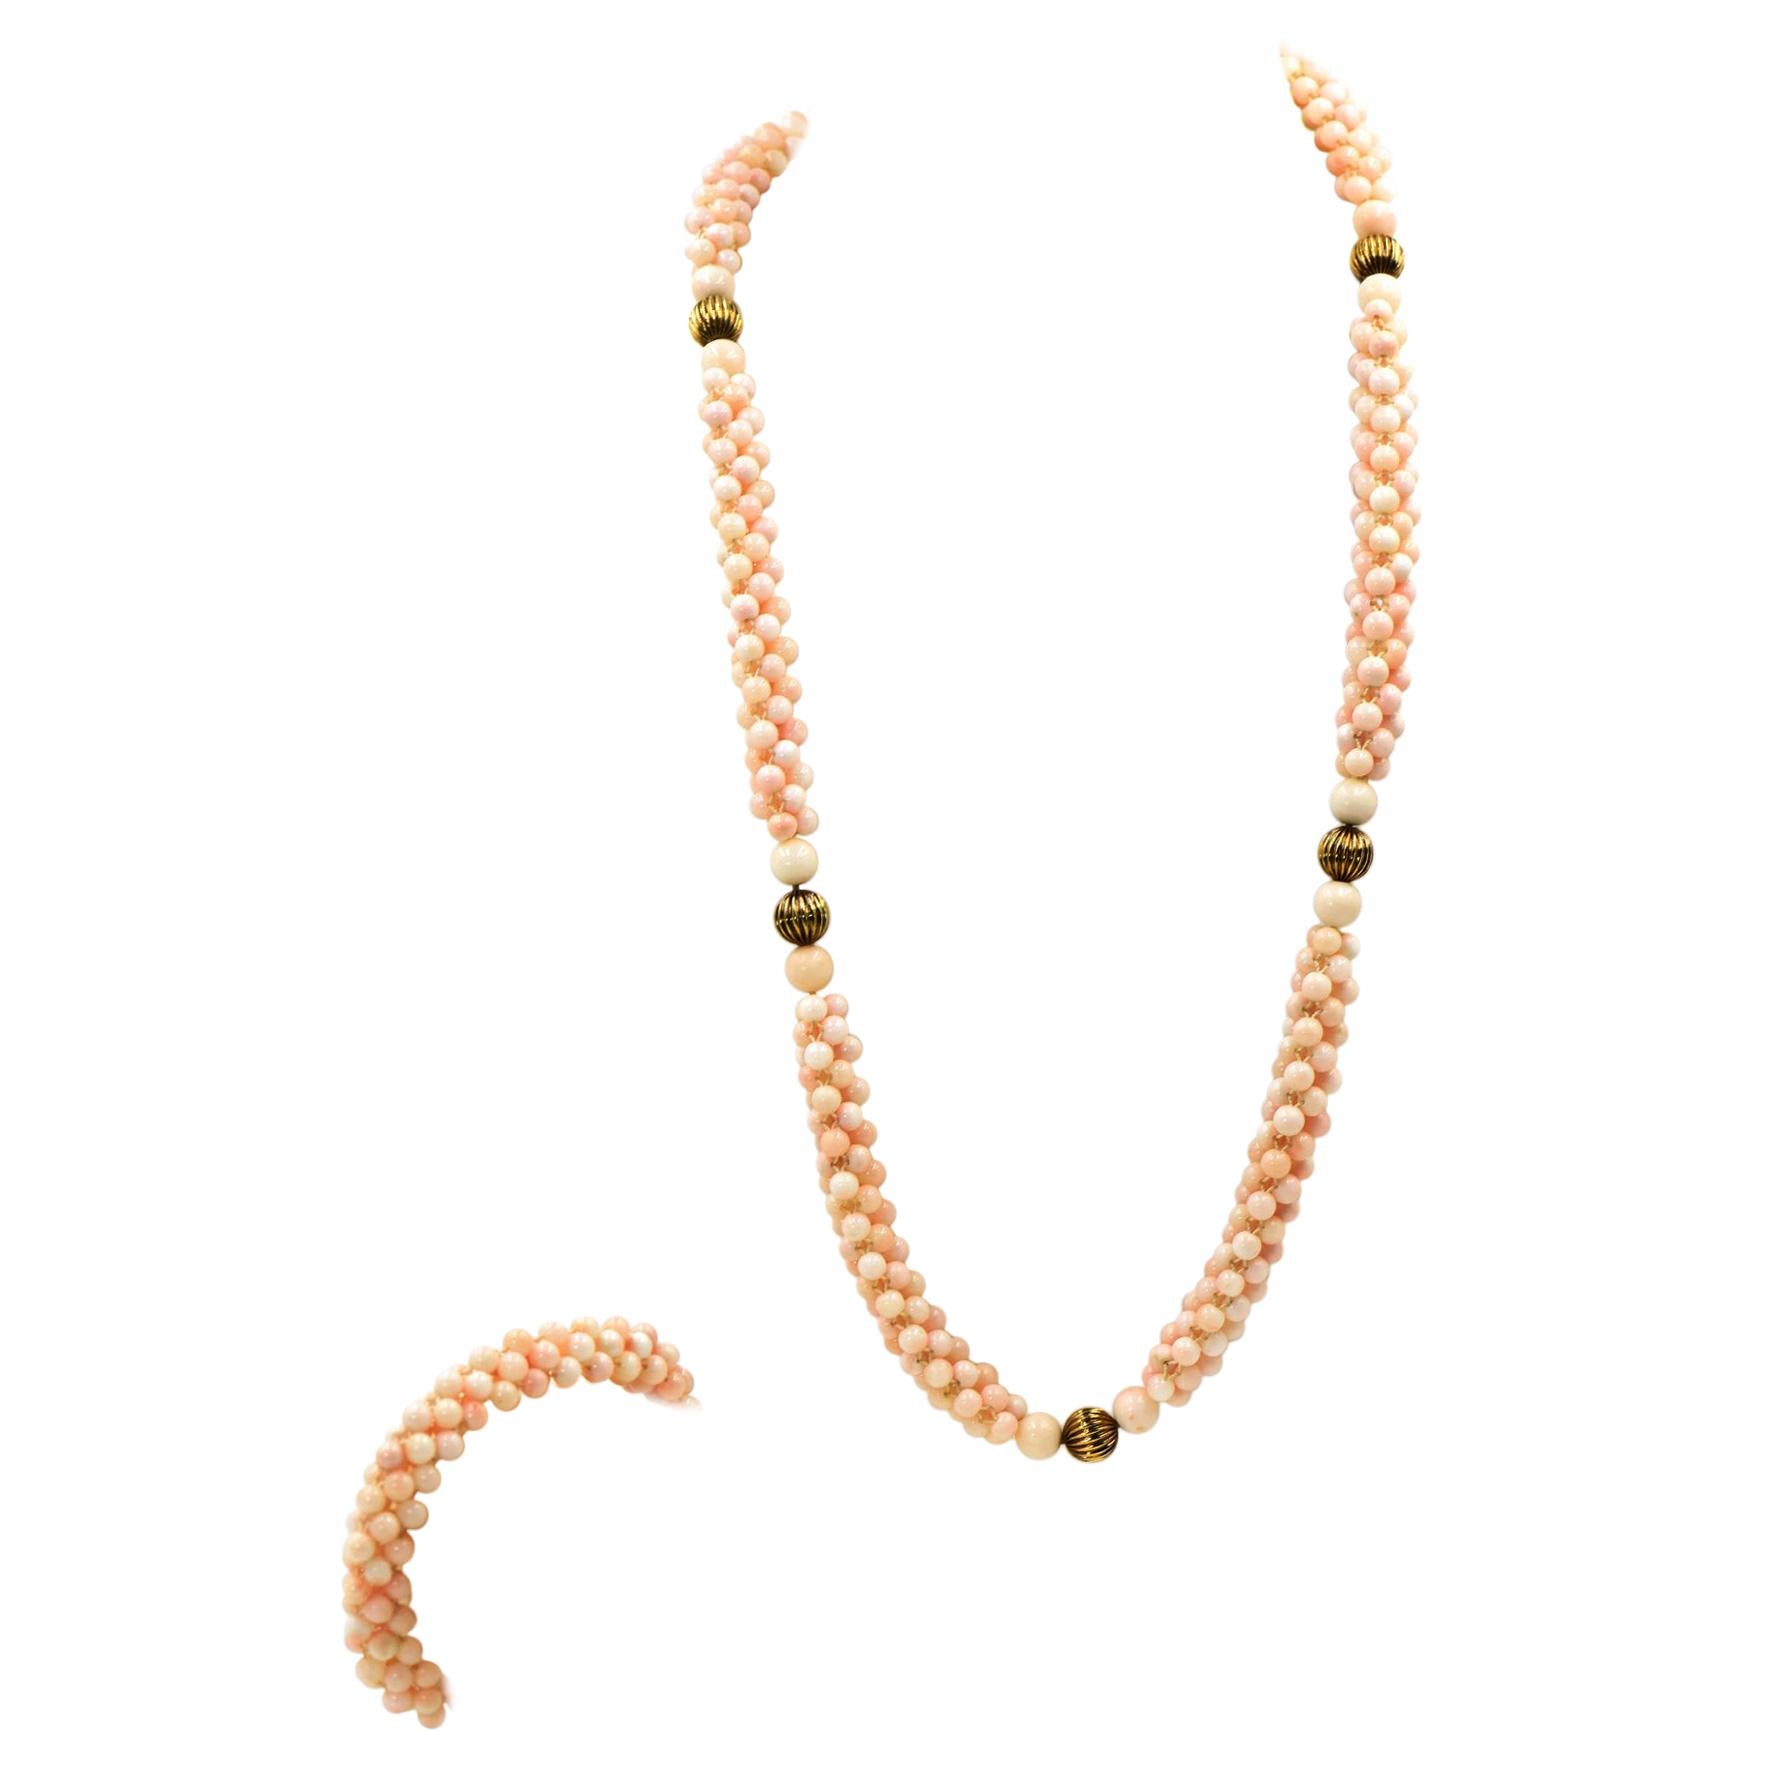 Halskette und Armband aus Gold mit gewebter Engelshaut-Koralle